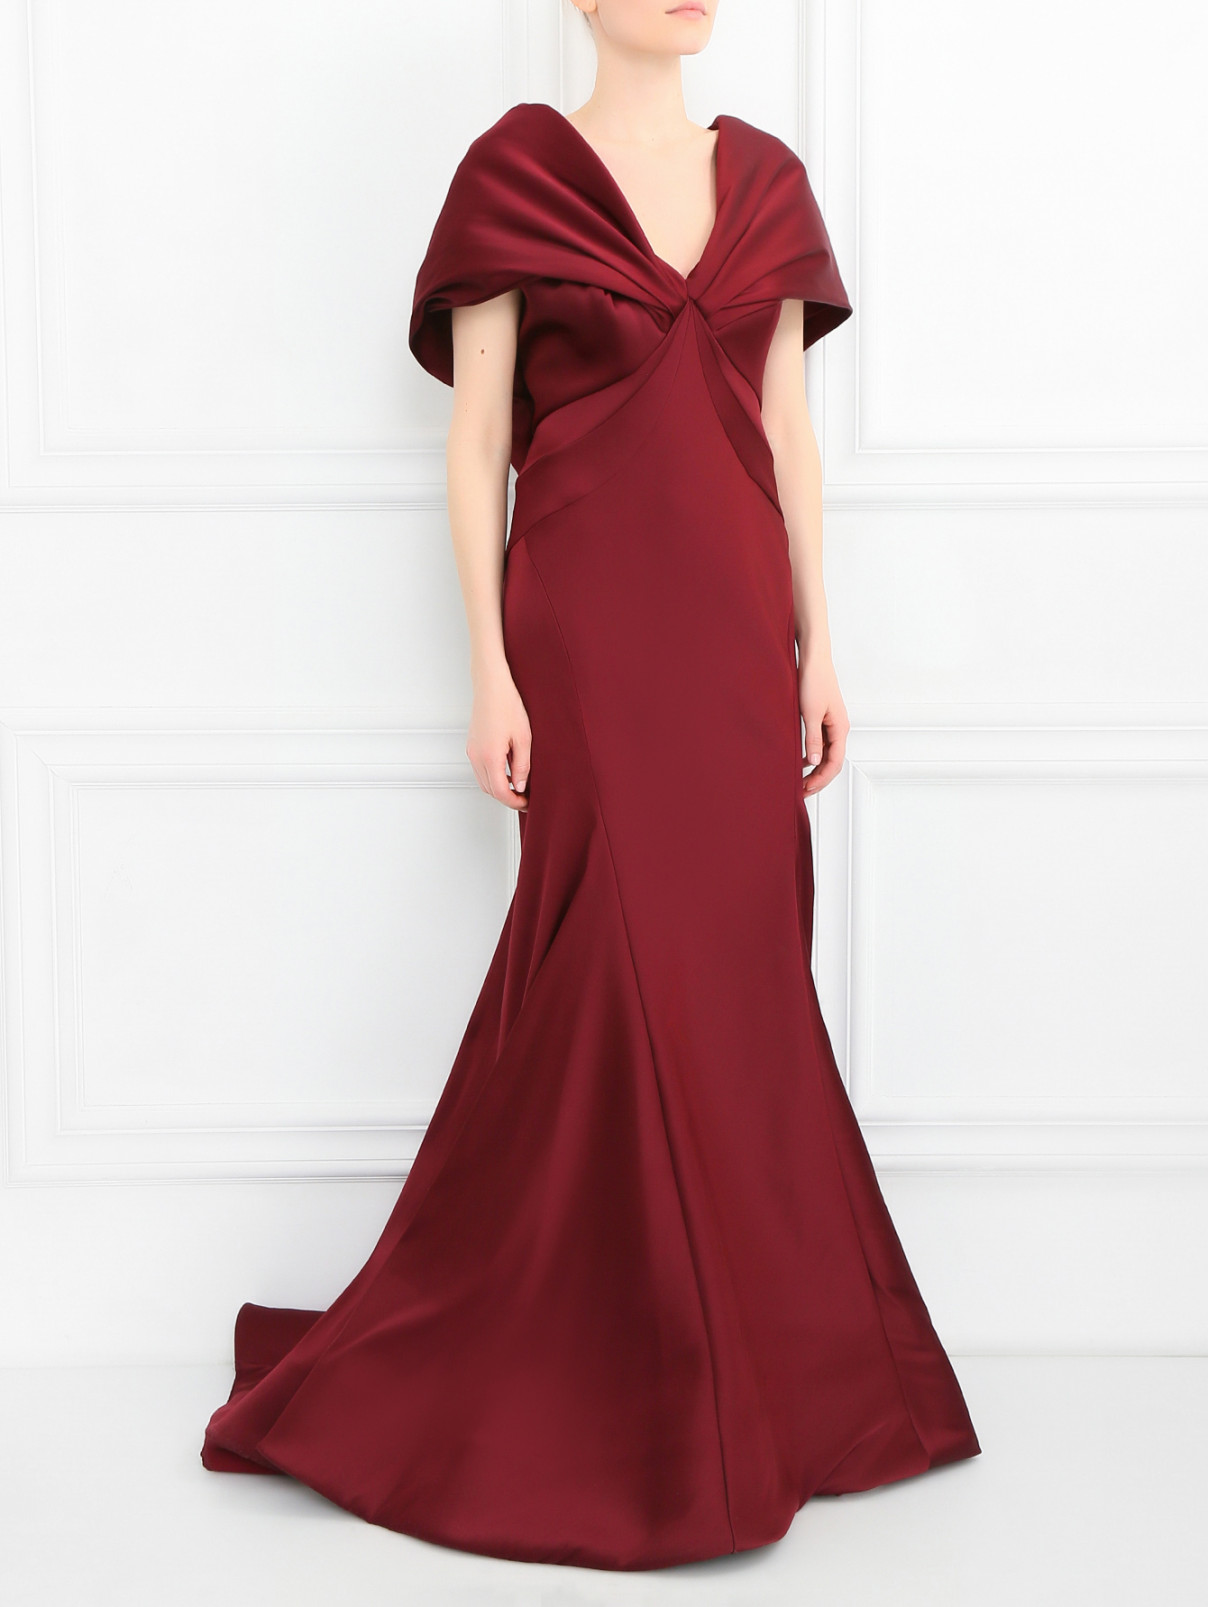 Платье-макси с драпировкой и шлейфом Zac Posen  –  Модель Общий вид  – Цвет:  Красный